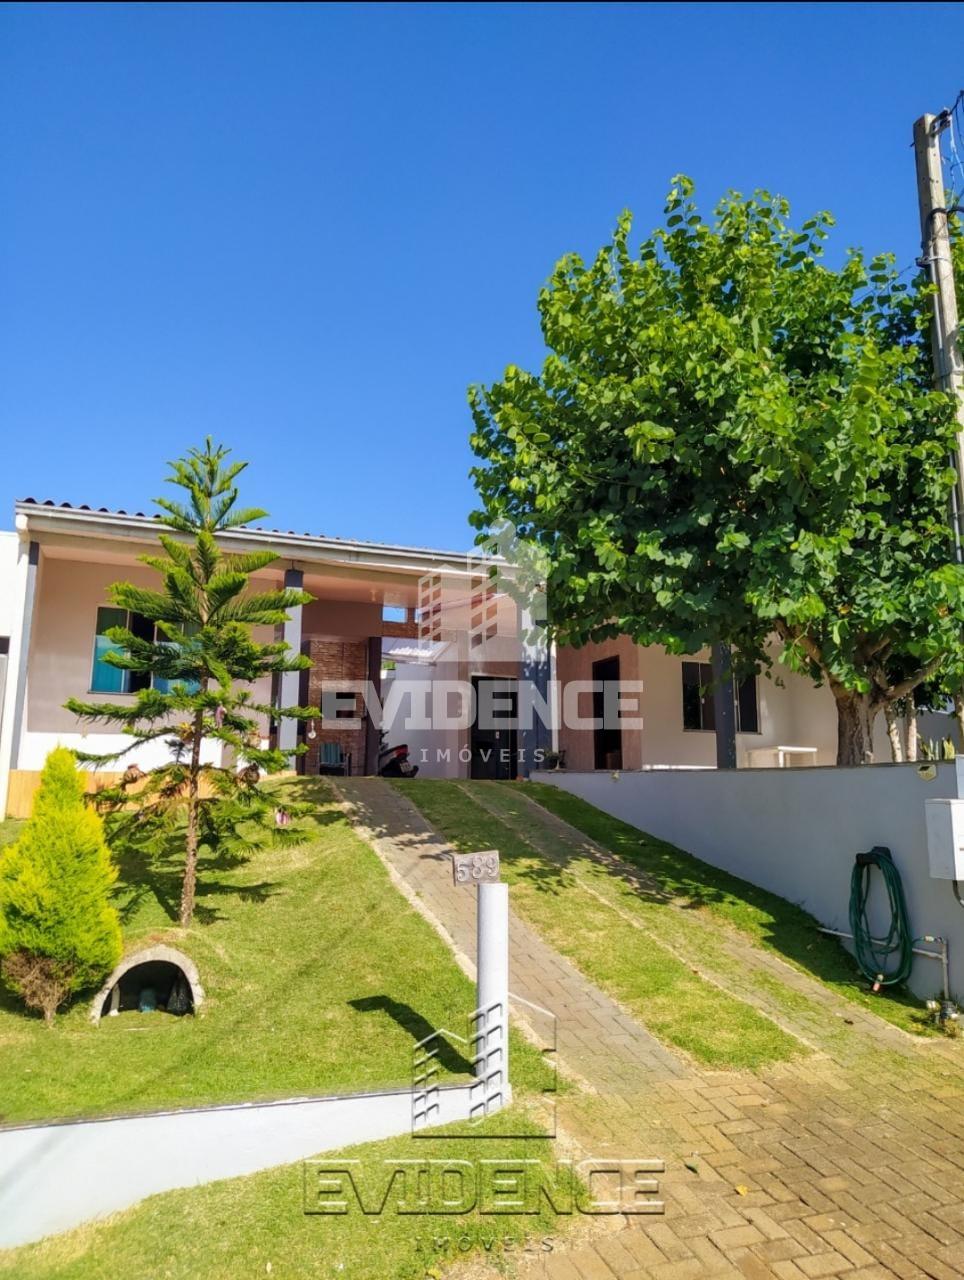 Casa com 2 dormitórios à venda, SÃO FRANCISCO, PATO BRANCO - PR